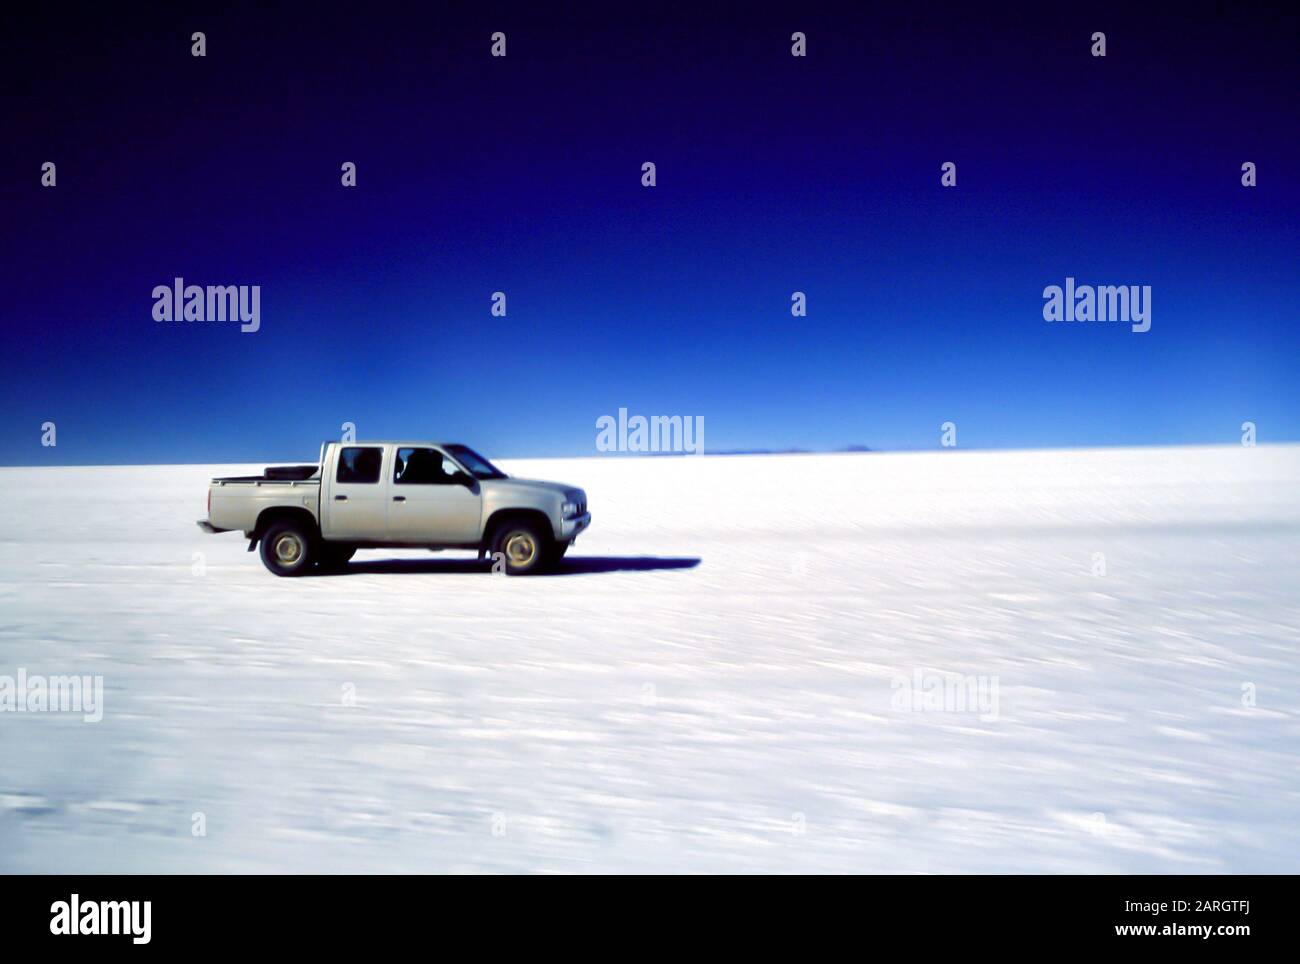 Salar de Uyuni, Bolivie, Amérique latine: Un pick-up de voiture court sur l'étendue de sel du Salar de Uyuni Banque D'Images